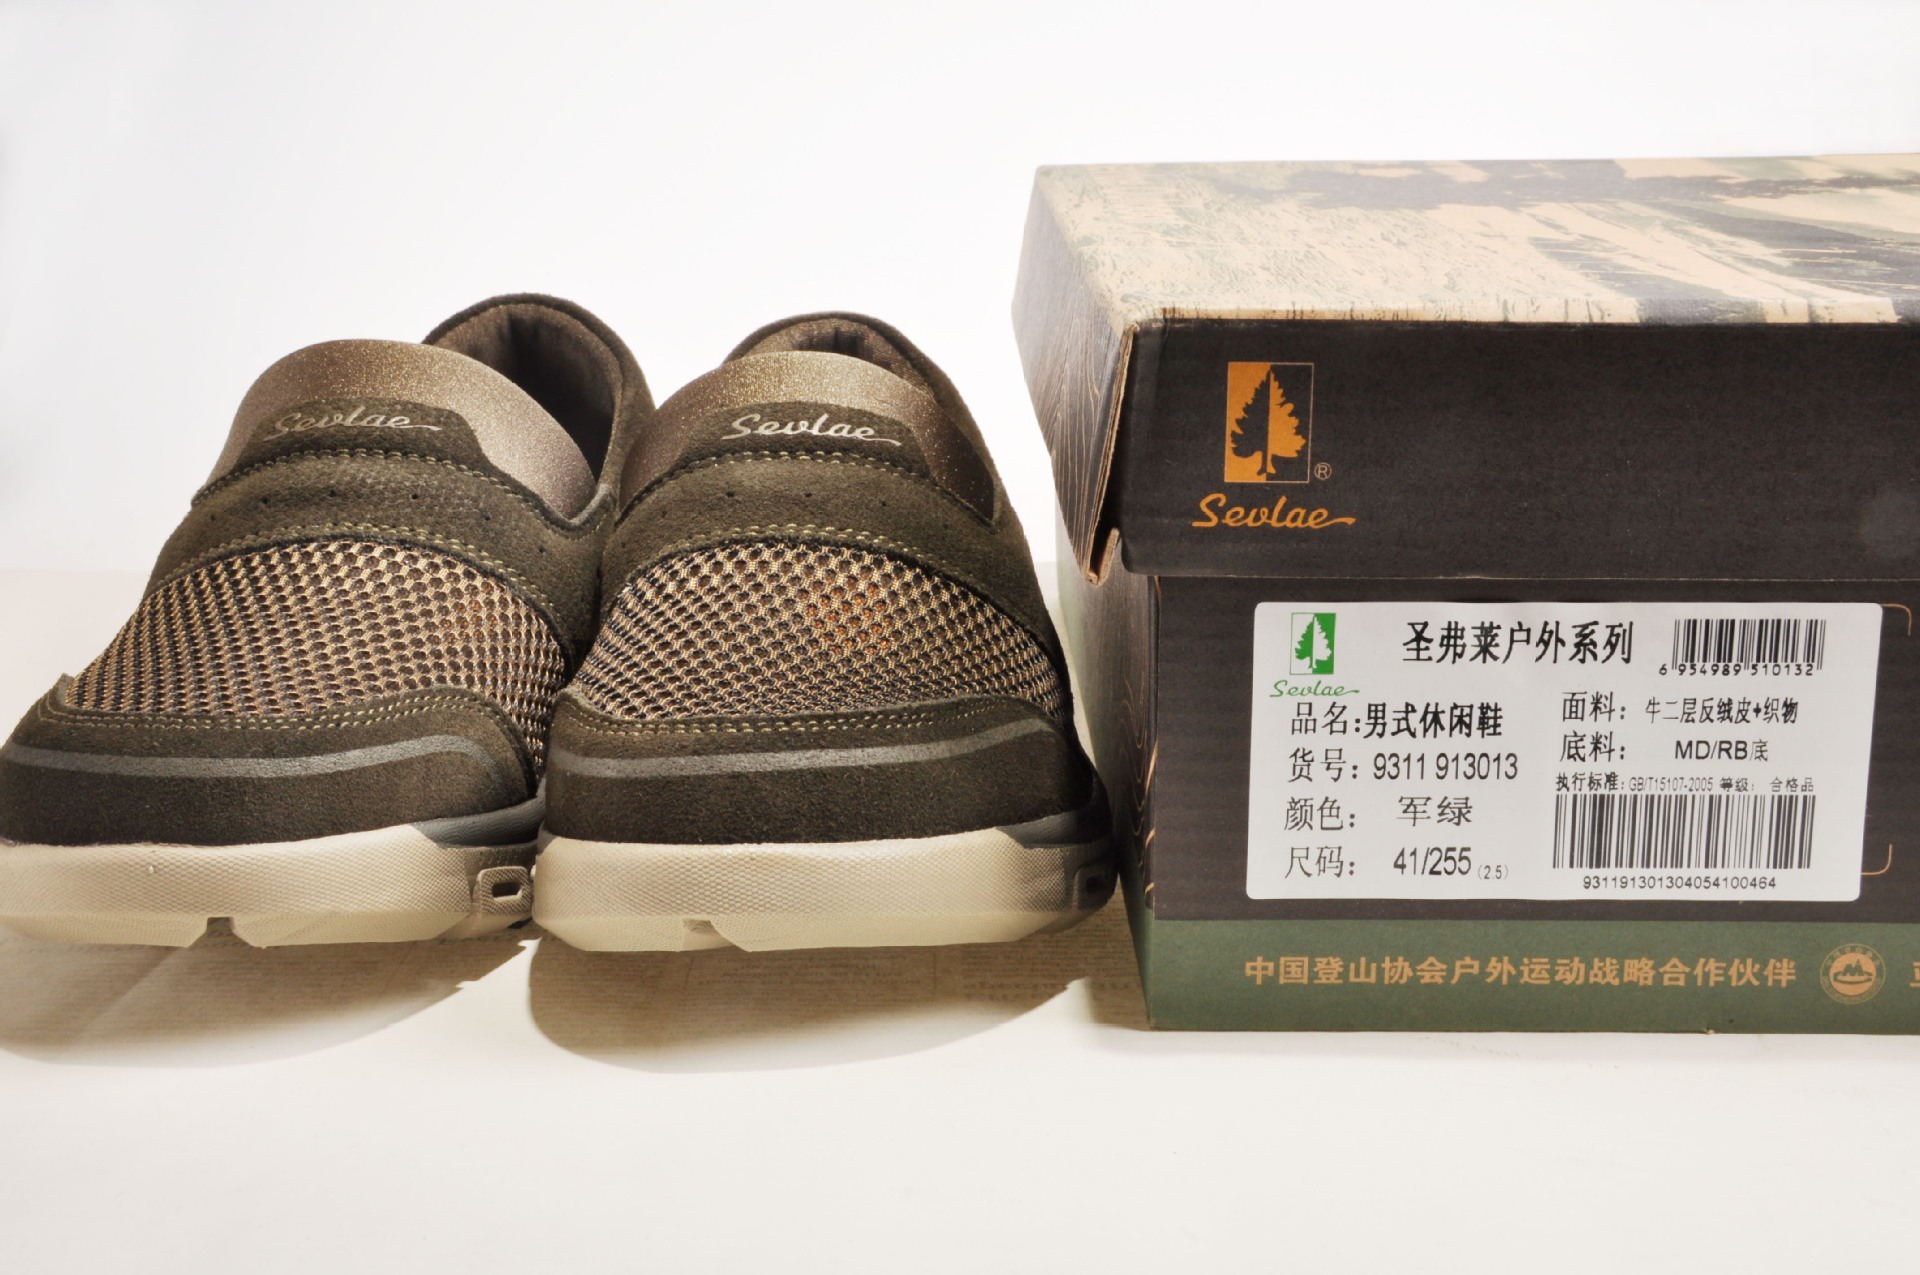 知名鞋品牌在上海的品牌策划之道